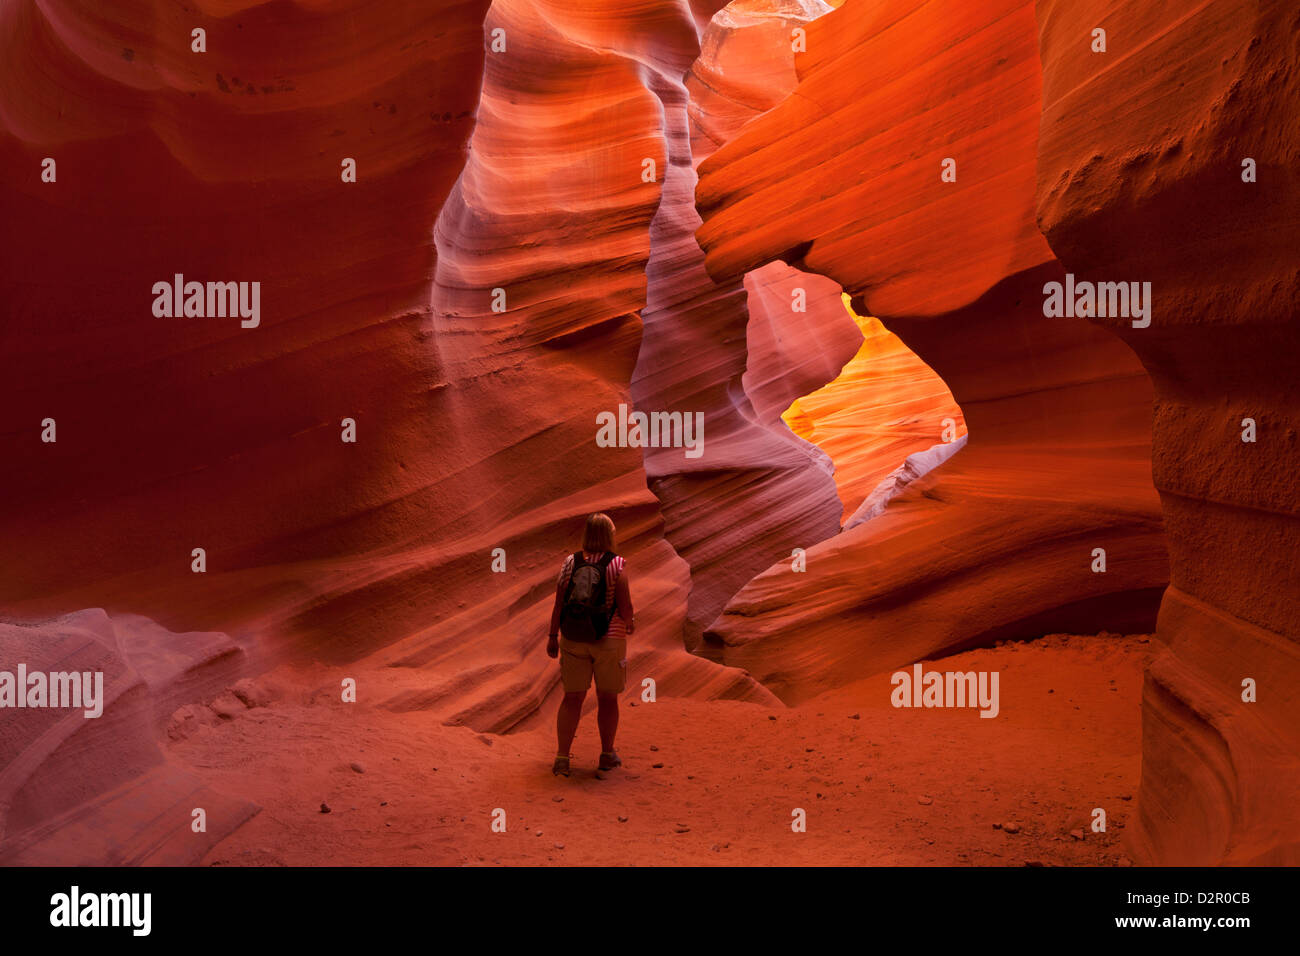 Mujeres turistas caminante y formaciones rocosas de arenisca, baje el Cañón Antelope, Page, Arizona, EE.UU. Foto de stock